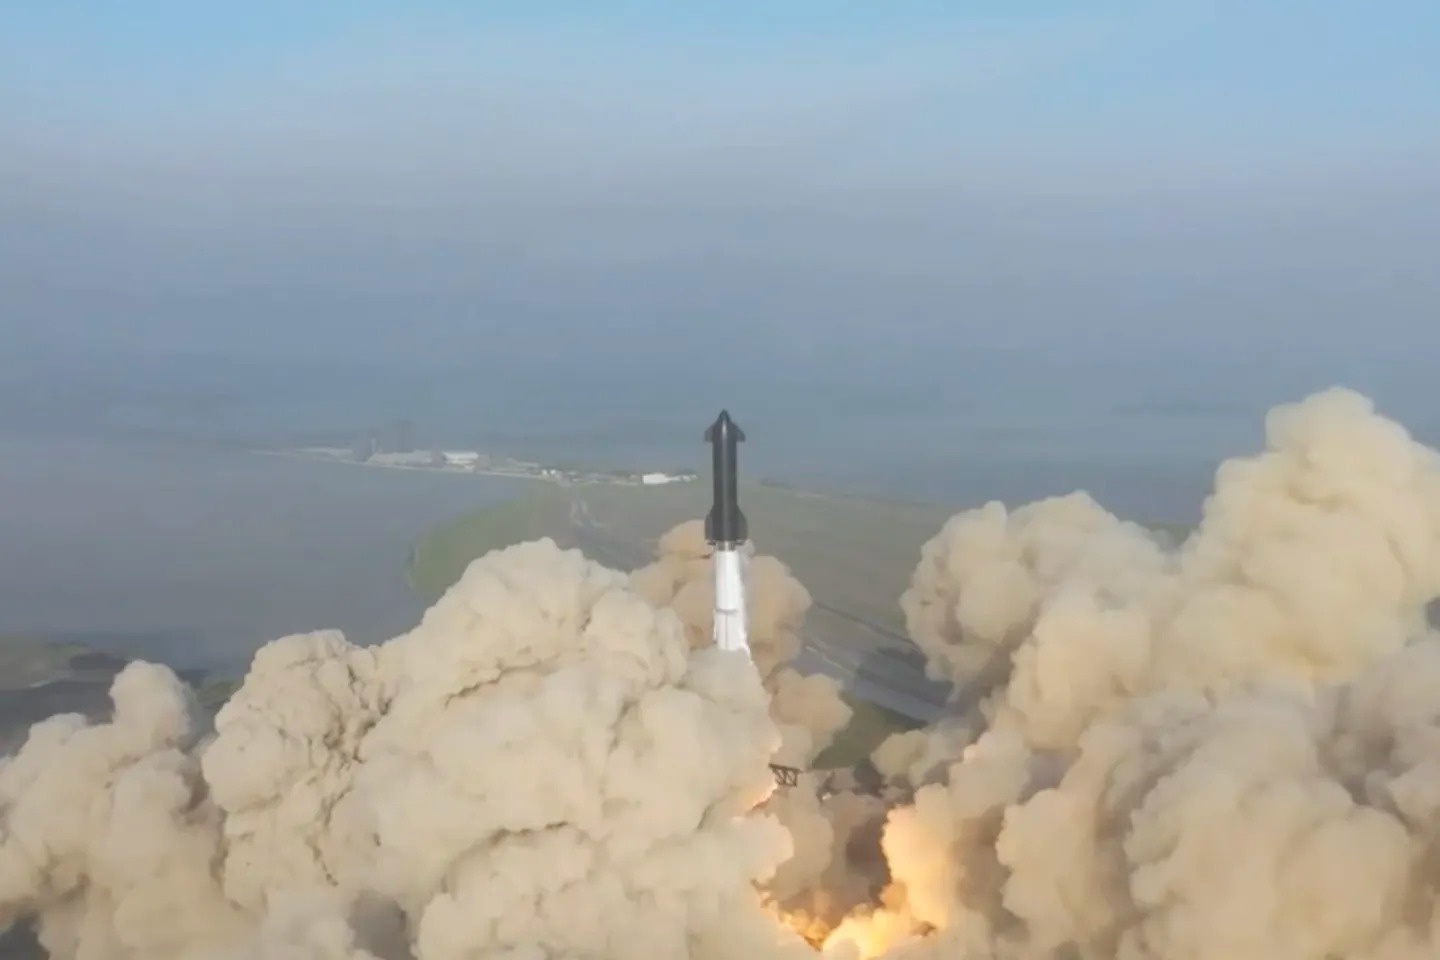 馬斯克的史上最大火箭 Starship 成功升空！但五分鐘內就變成一團火球了⋯